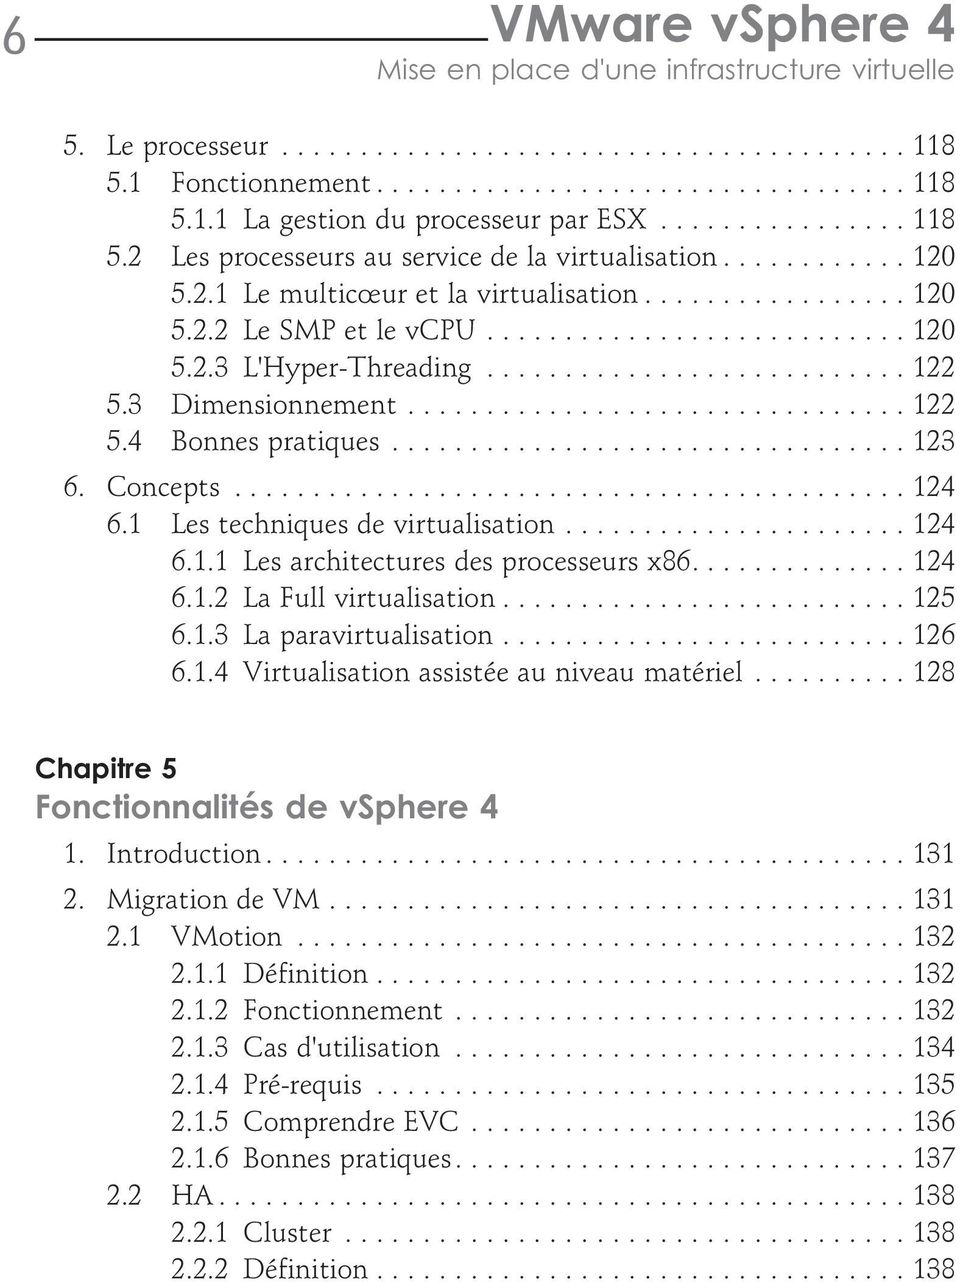 1 Les techniques de virtualisation...124 6.1.1 Les architectures des processeurs x86....124 6.1.2 La Full virtualisation...125 6.1.3 La paravirtualisation...126 6.1.4 Virtualisation assistée au niveau matériel.